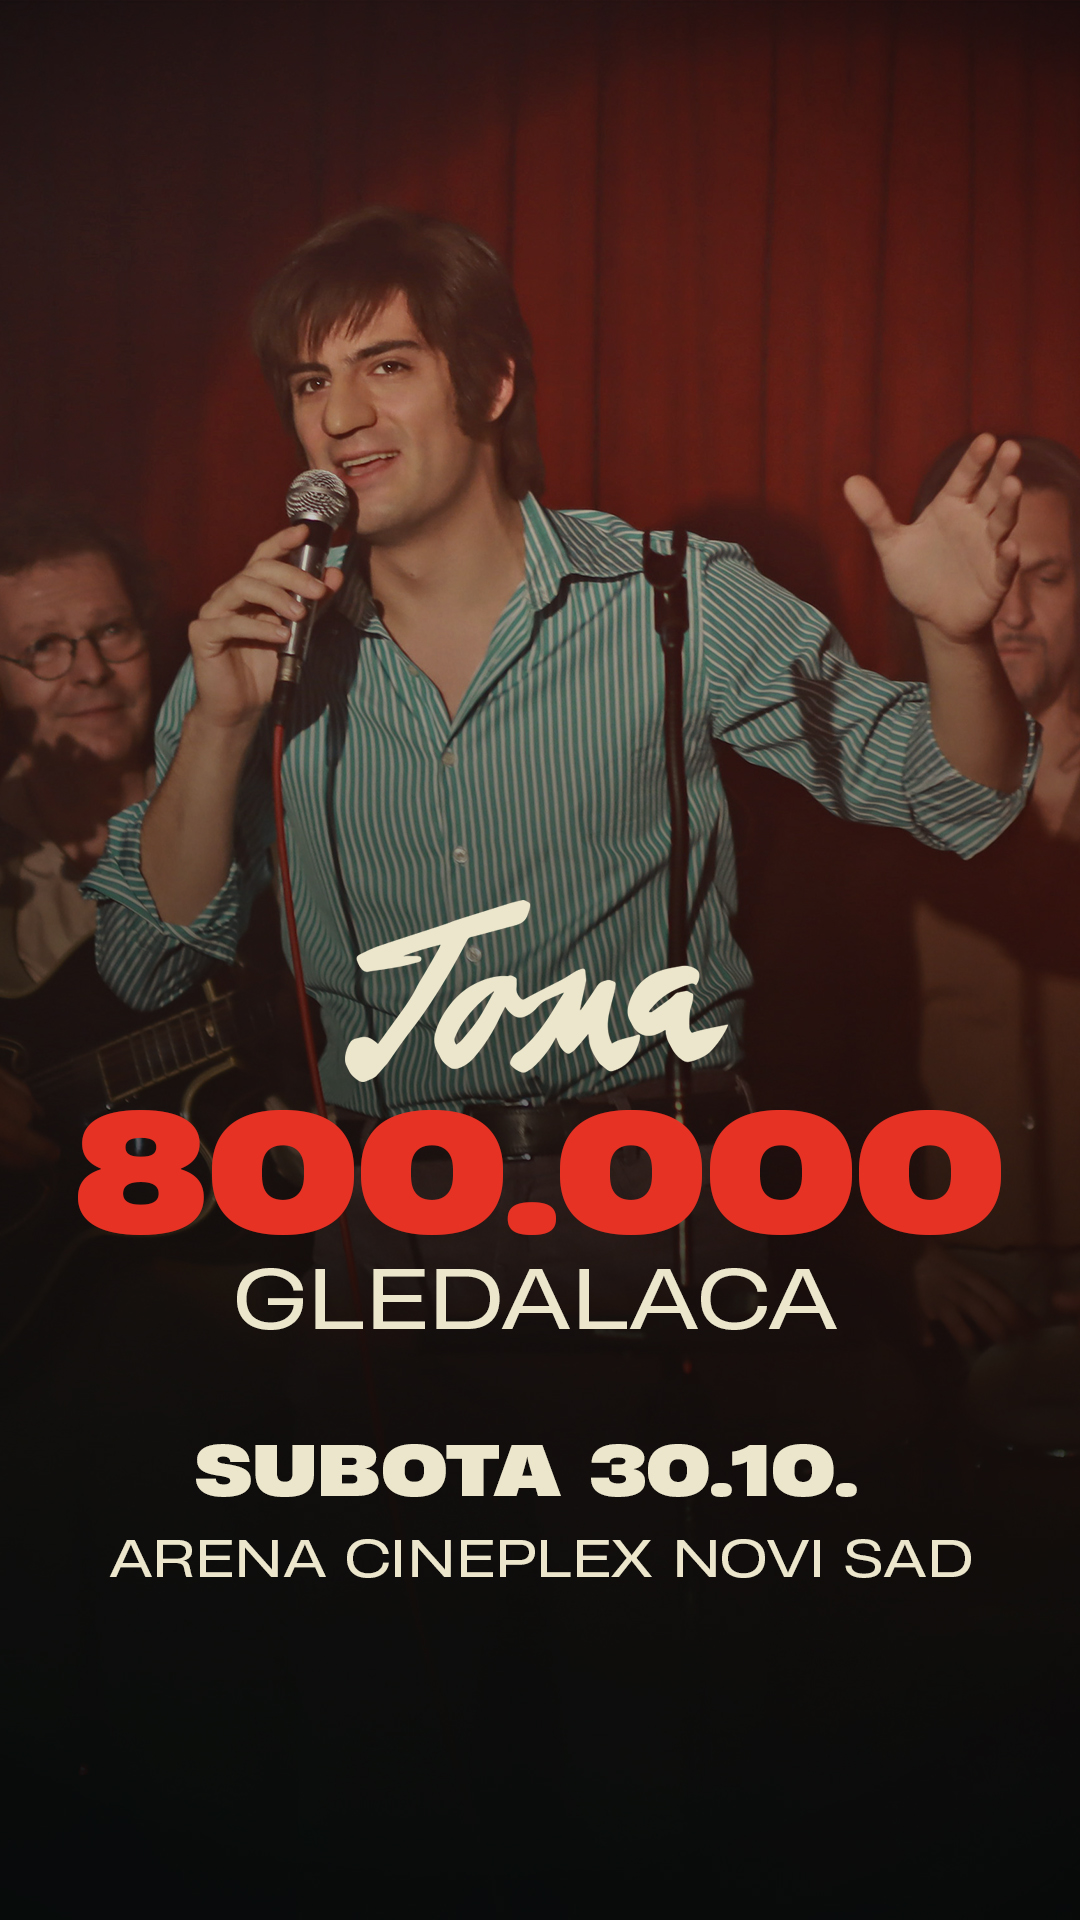 Deo glumačke ekipe povodom 800 000 gledalaca filma “Toma” u Areni